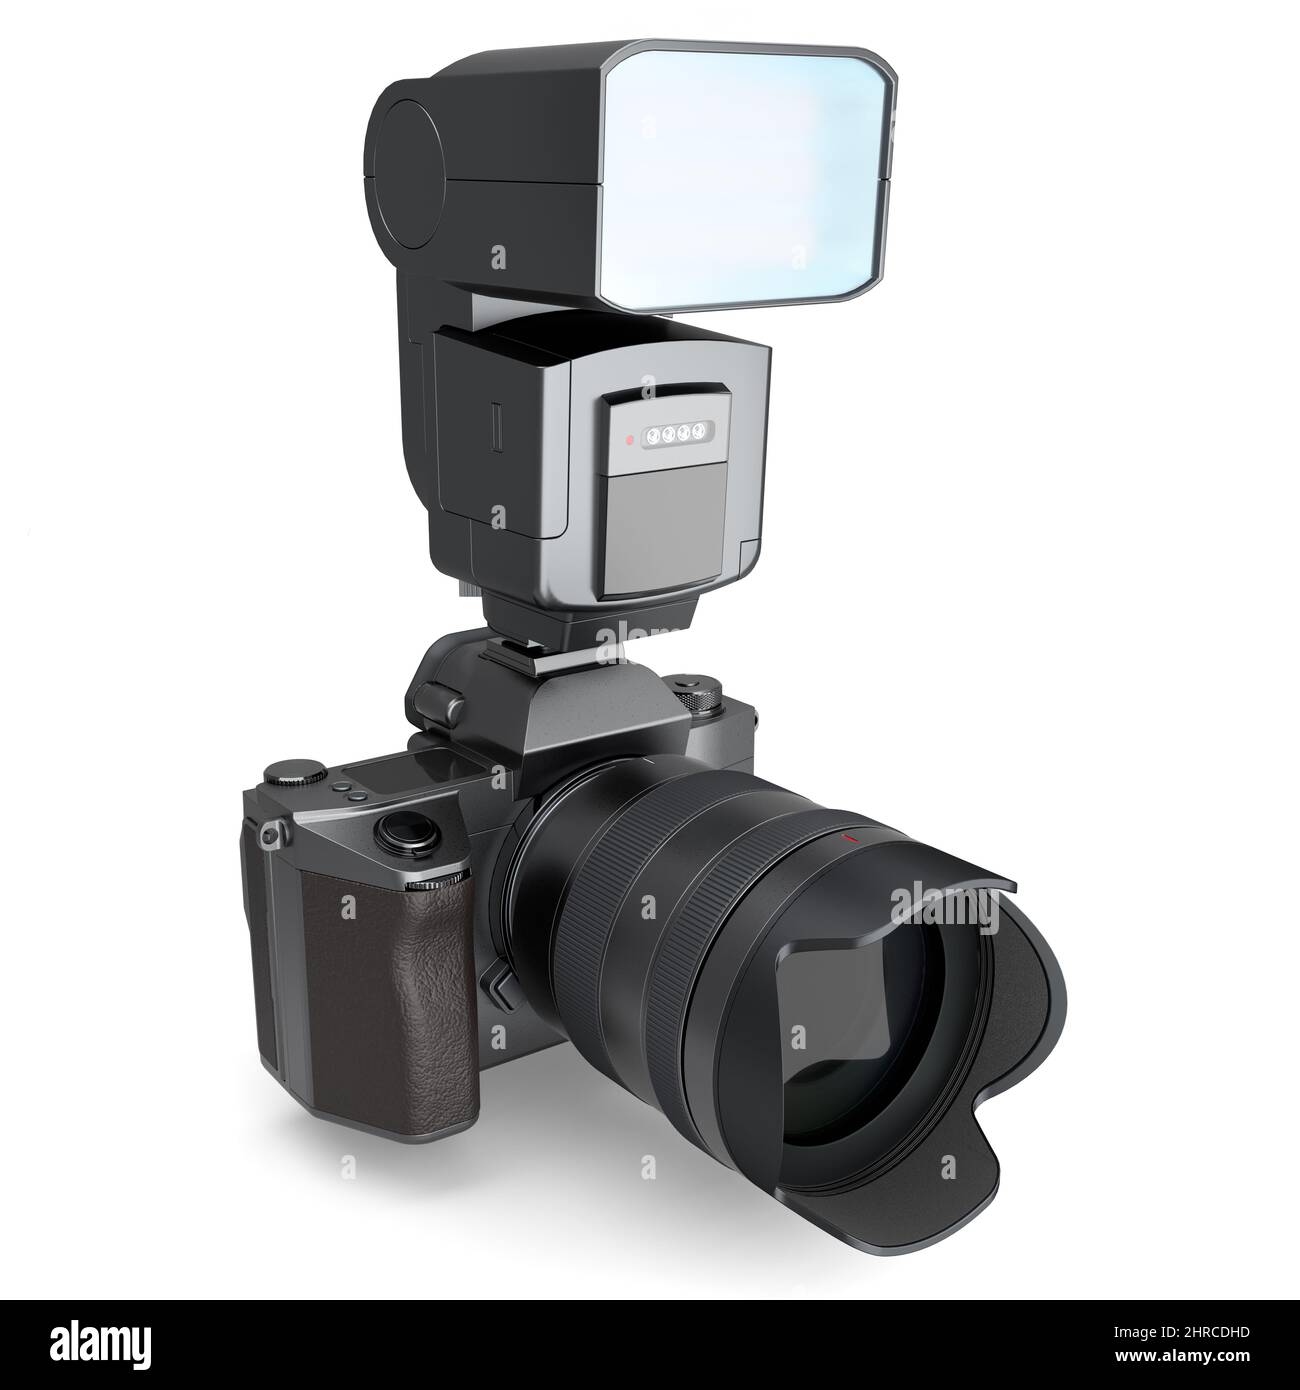 Concetto di fotocamera reflex digitale inesistente con obiettivo e flash esterno speedlight isolato su sfondo bianco. Rendering 3D e illustrazione di professionisti Foto Stock